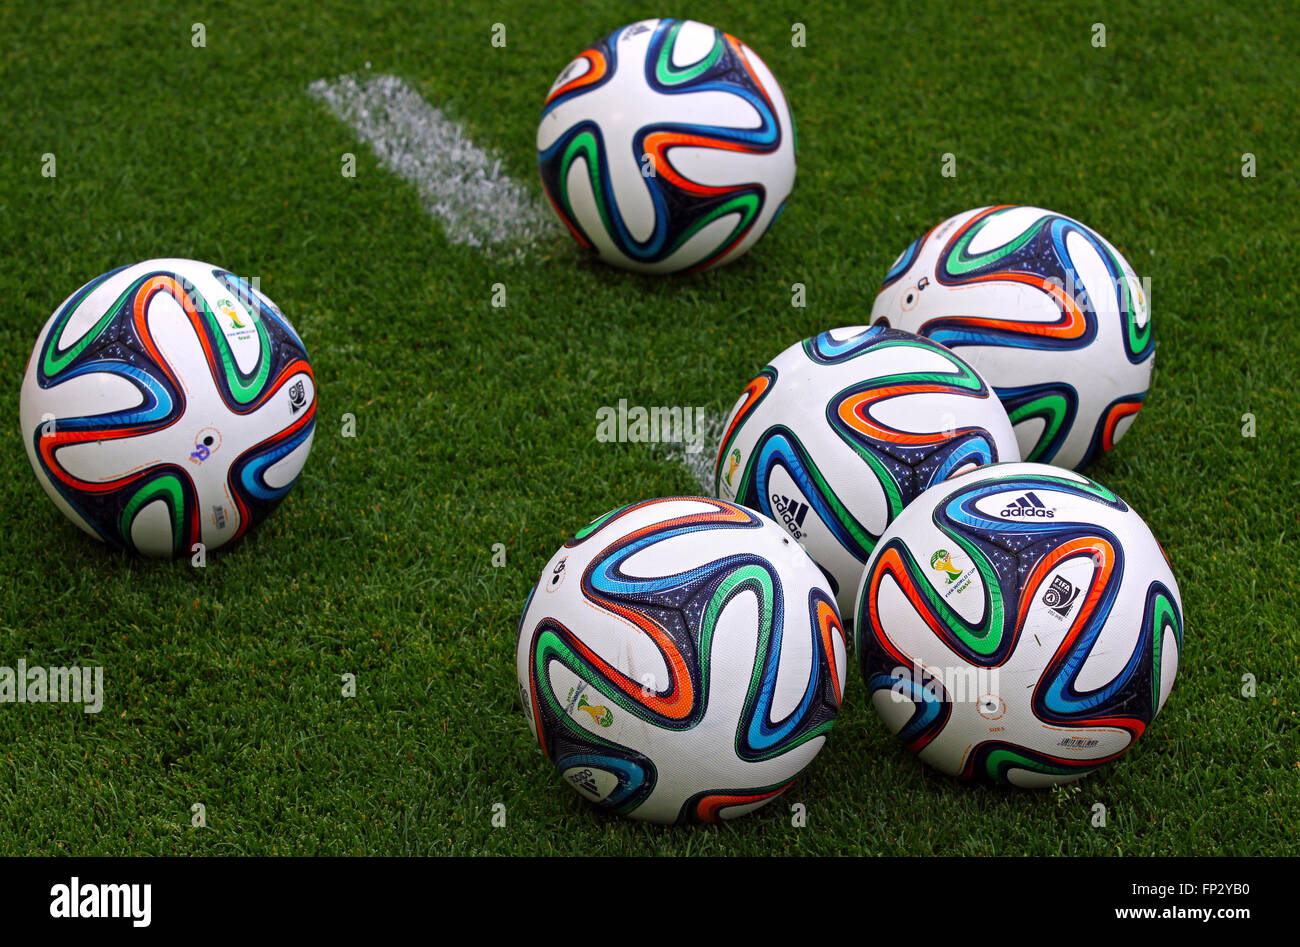 Kiew, UKRAINE - 18. Mai 2014: Offizielle FIFA WM 2014 Kugeln (Brazuca) auf dem Rasen während Ukraine Meisterschaftsspiel zwischen Stockfoto